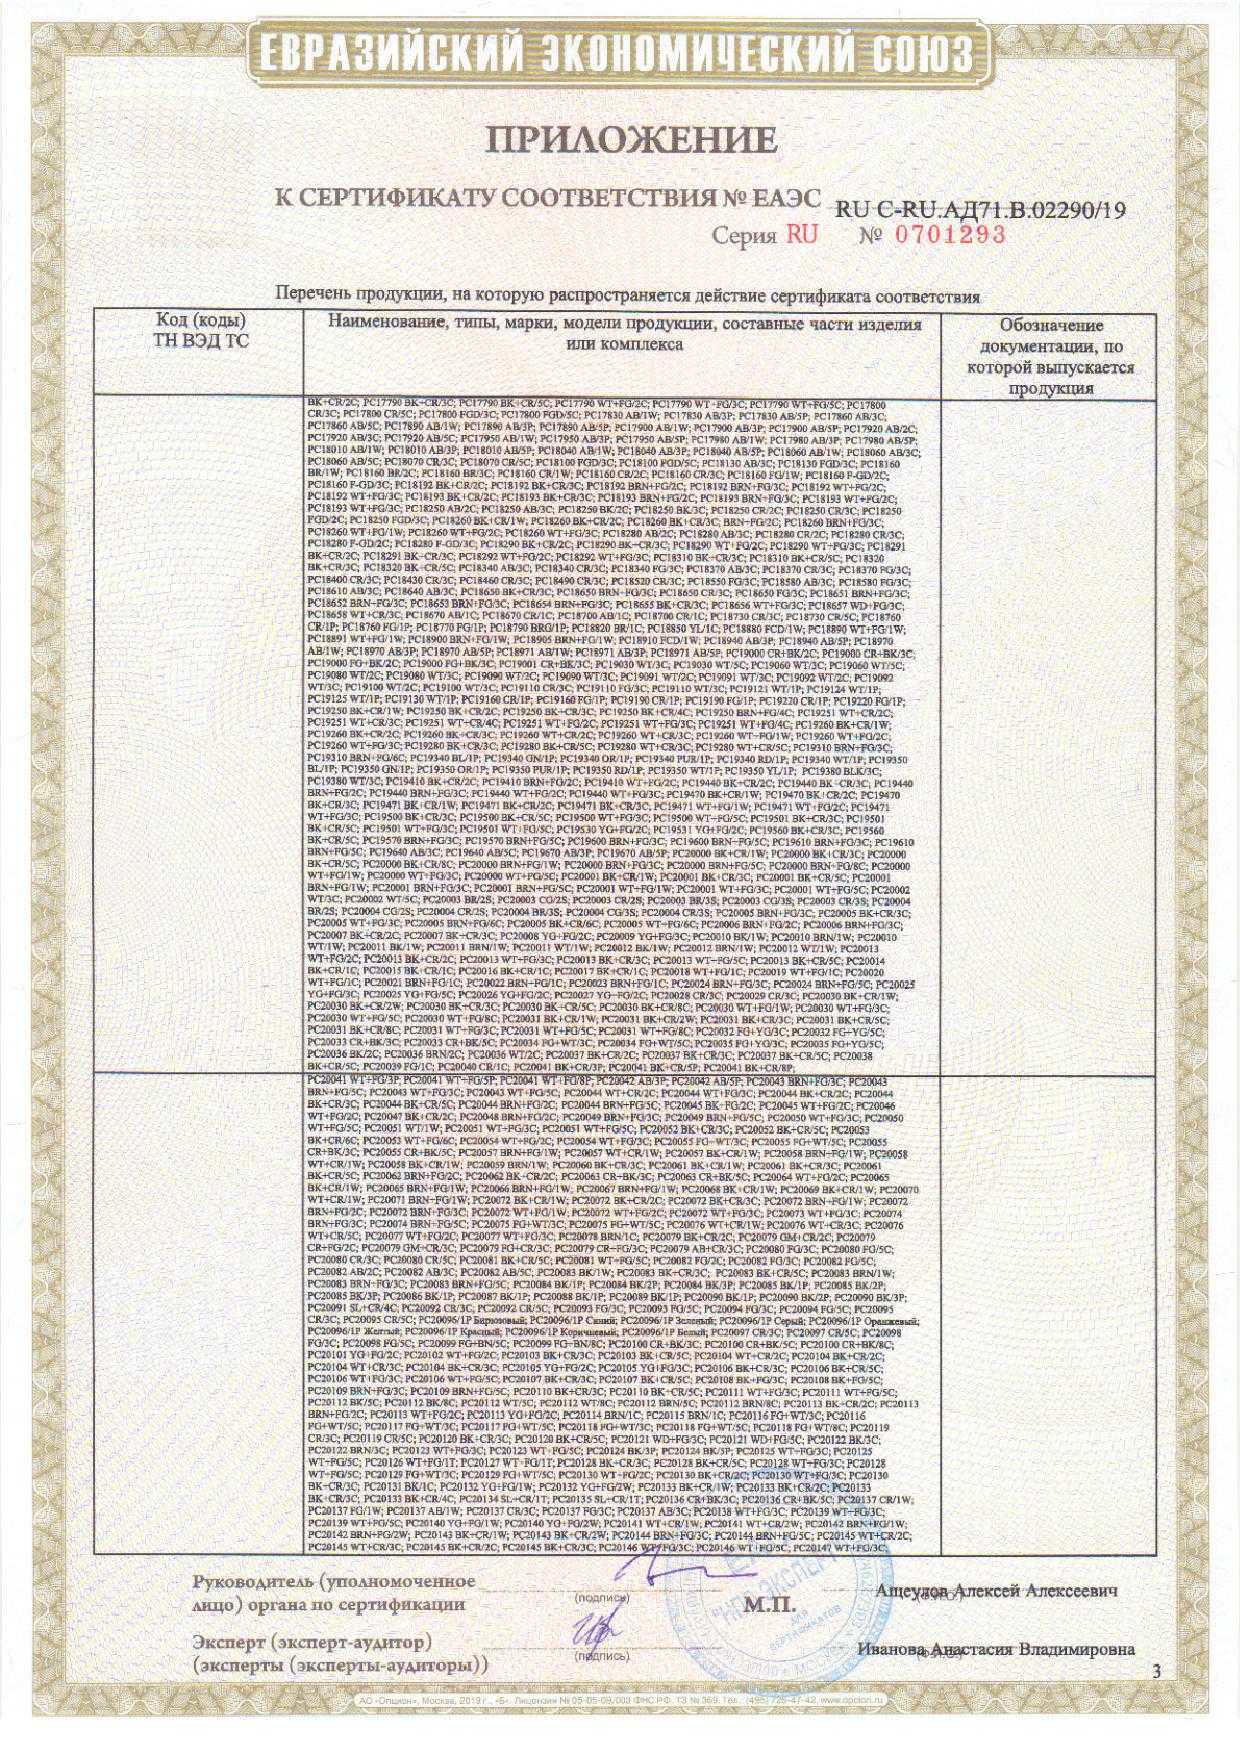 Оп ru e ru ru 00.0000387 p5. Сертификат ТС.ru.c-. Сертификат соответствия ЕАЭС. Сертификат ТС-1. Сертификат соответствия ЕАЭС ru c.